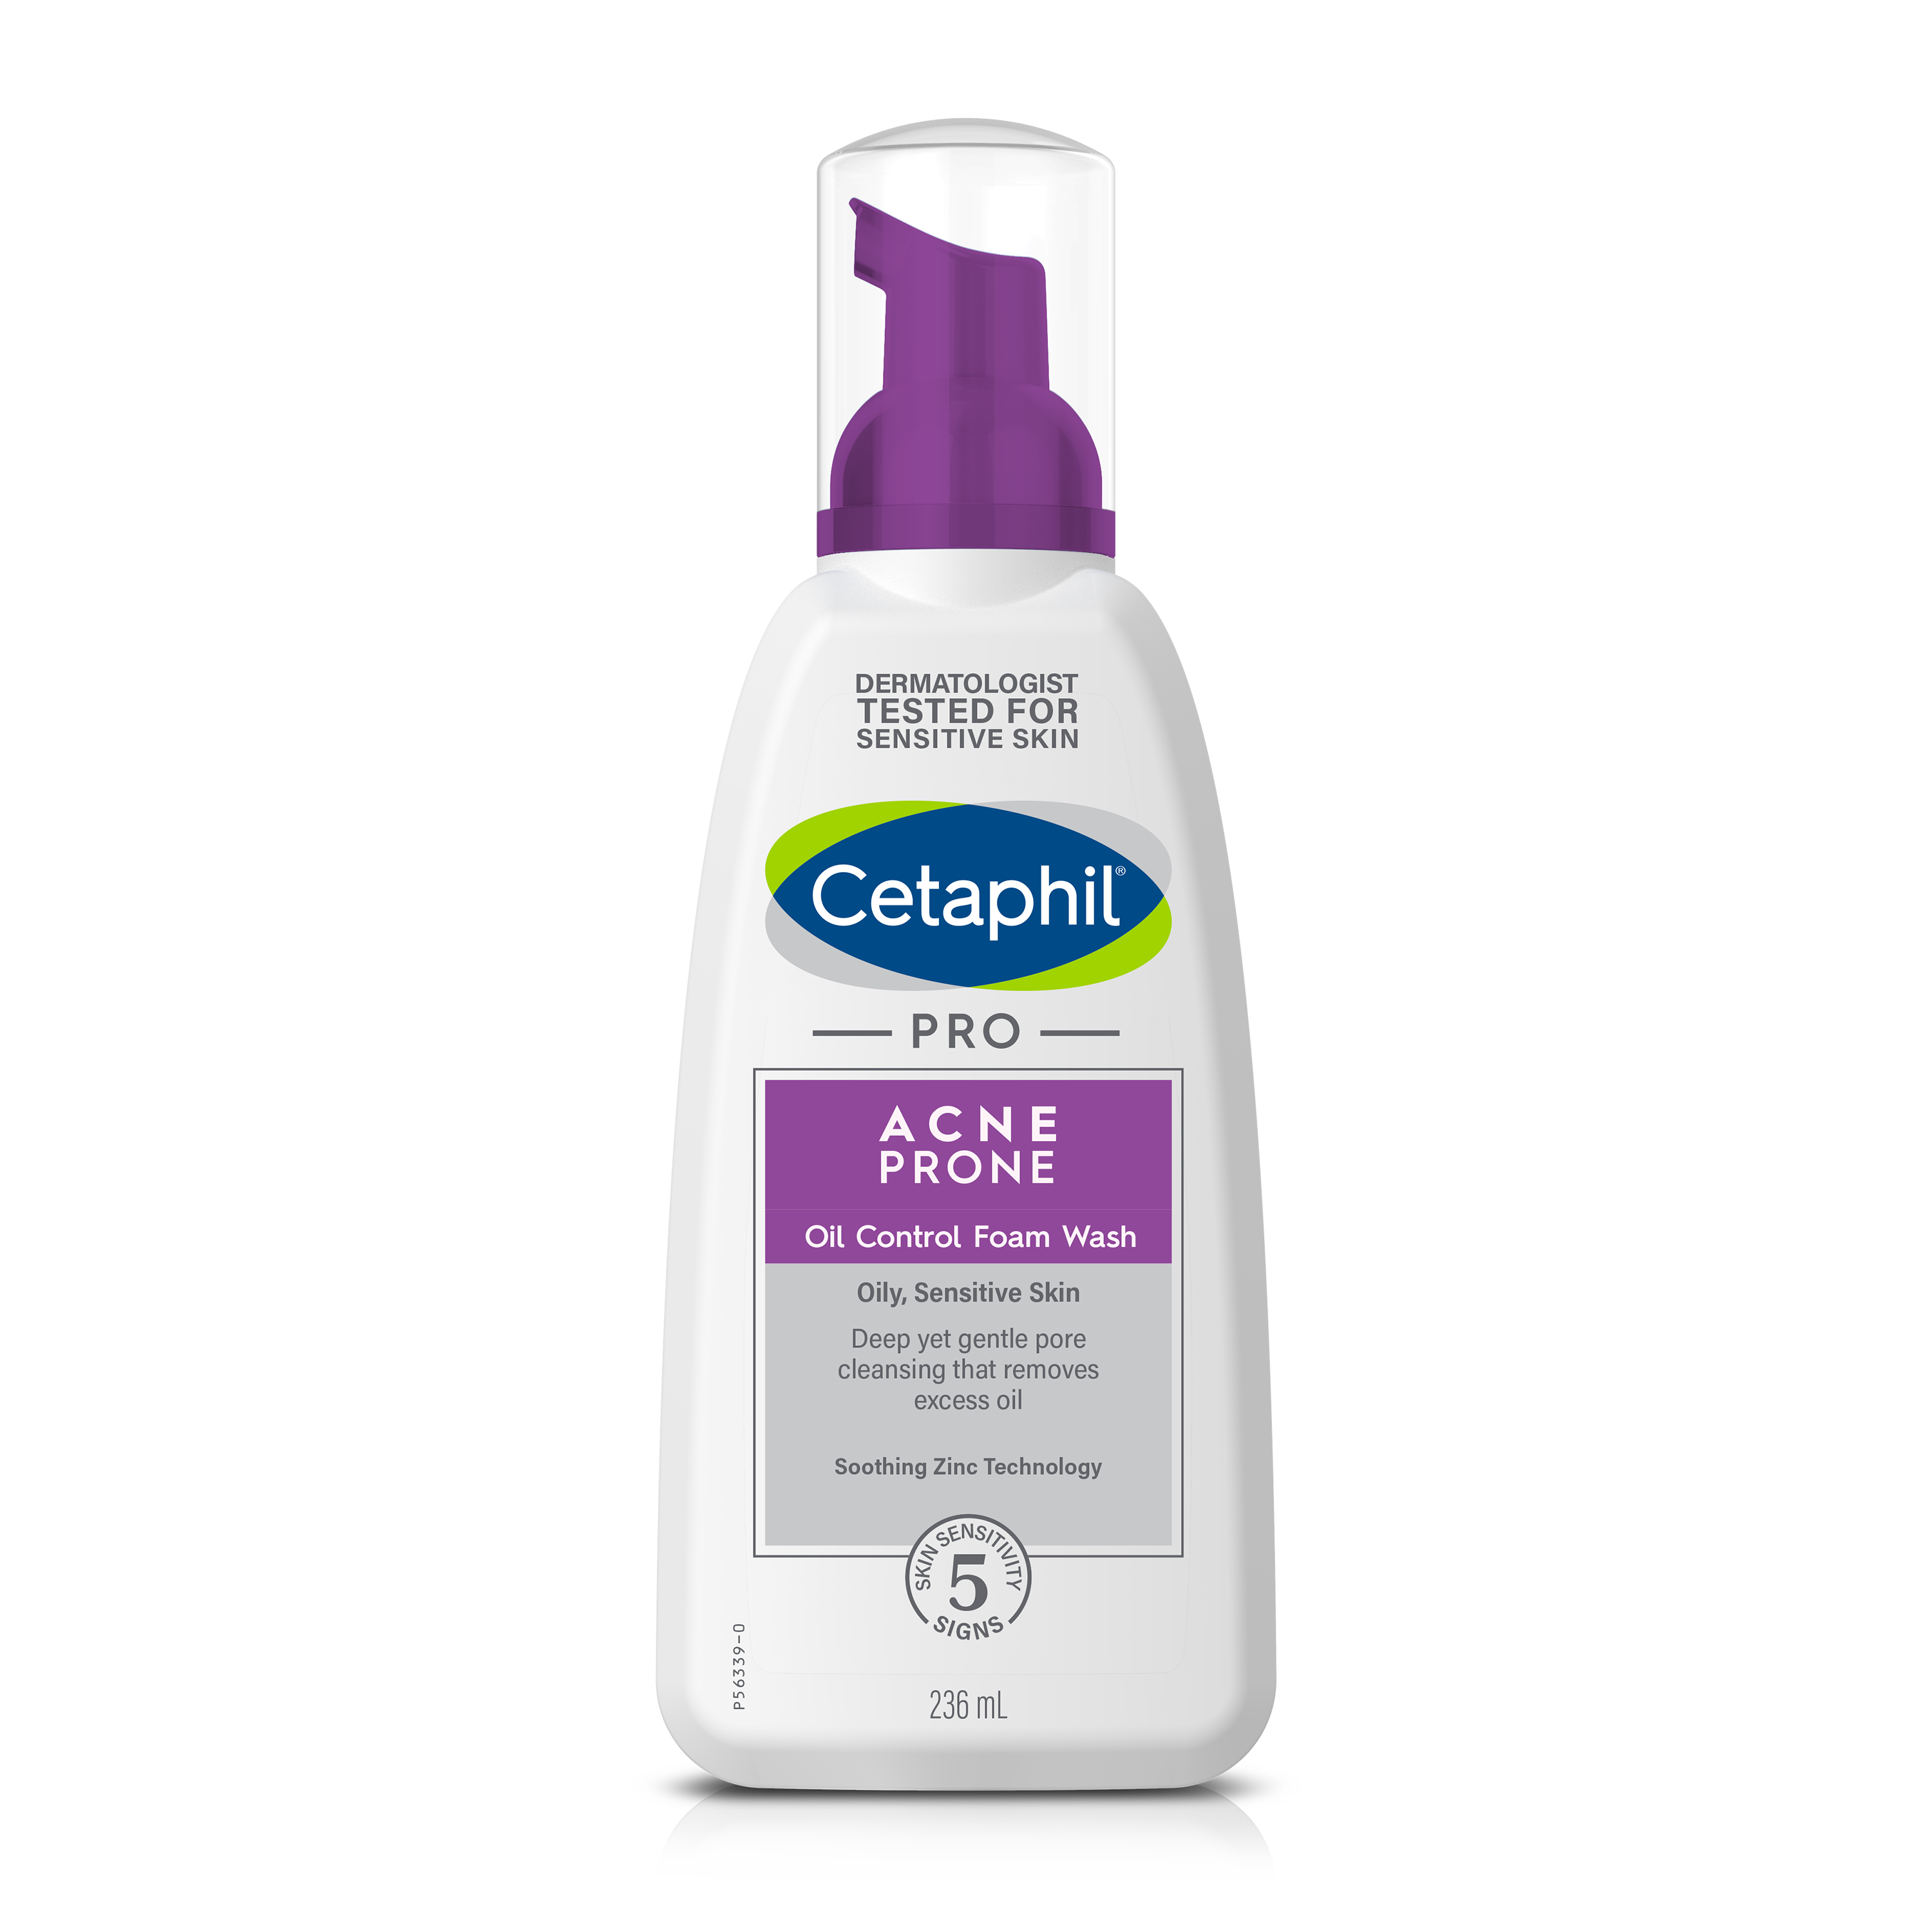 Cetaphil Pro Acne Prone Oil Control Foam Wash